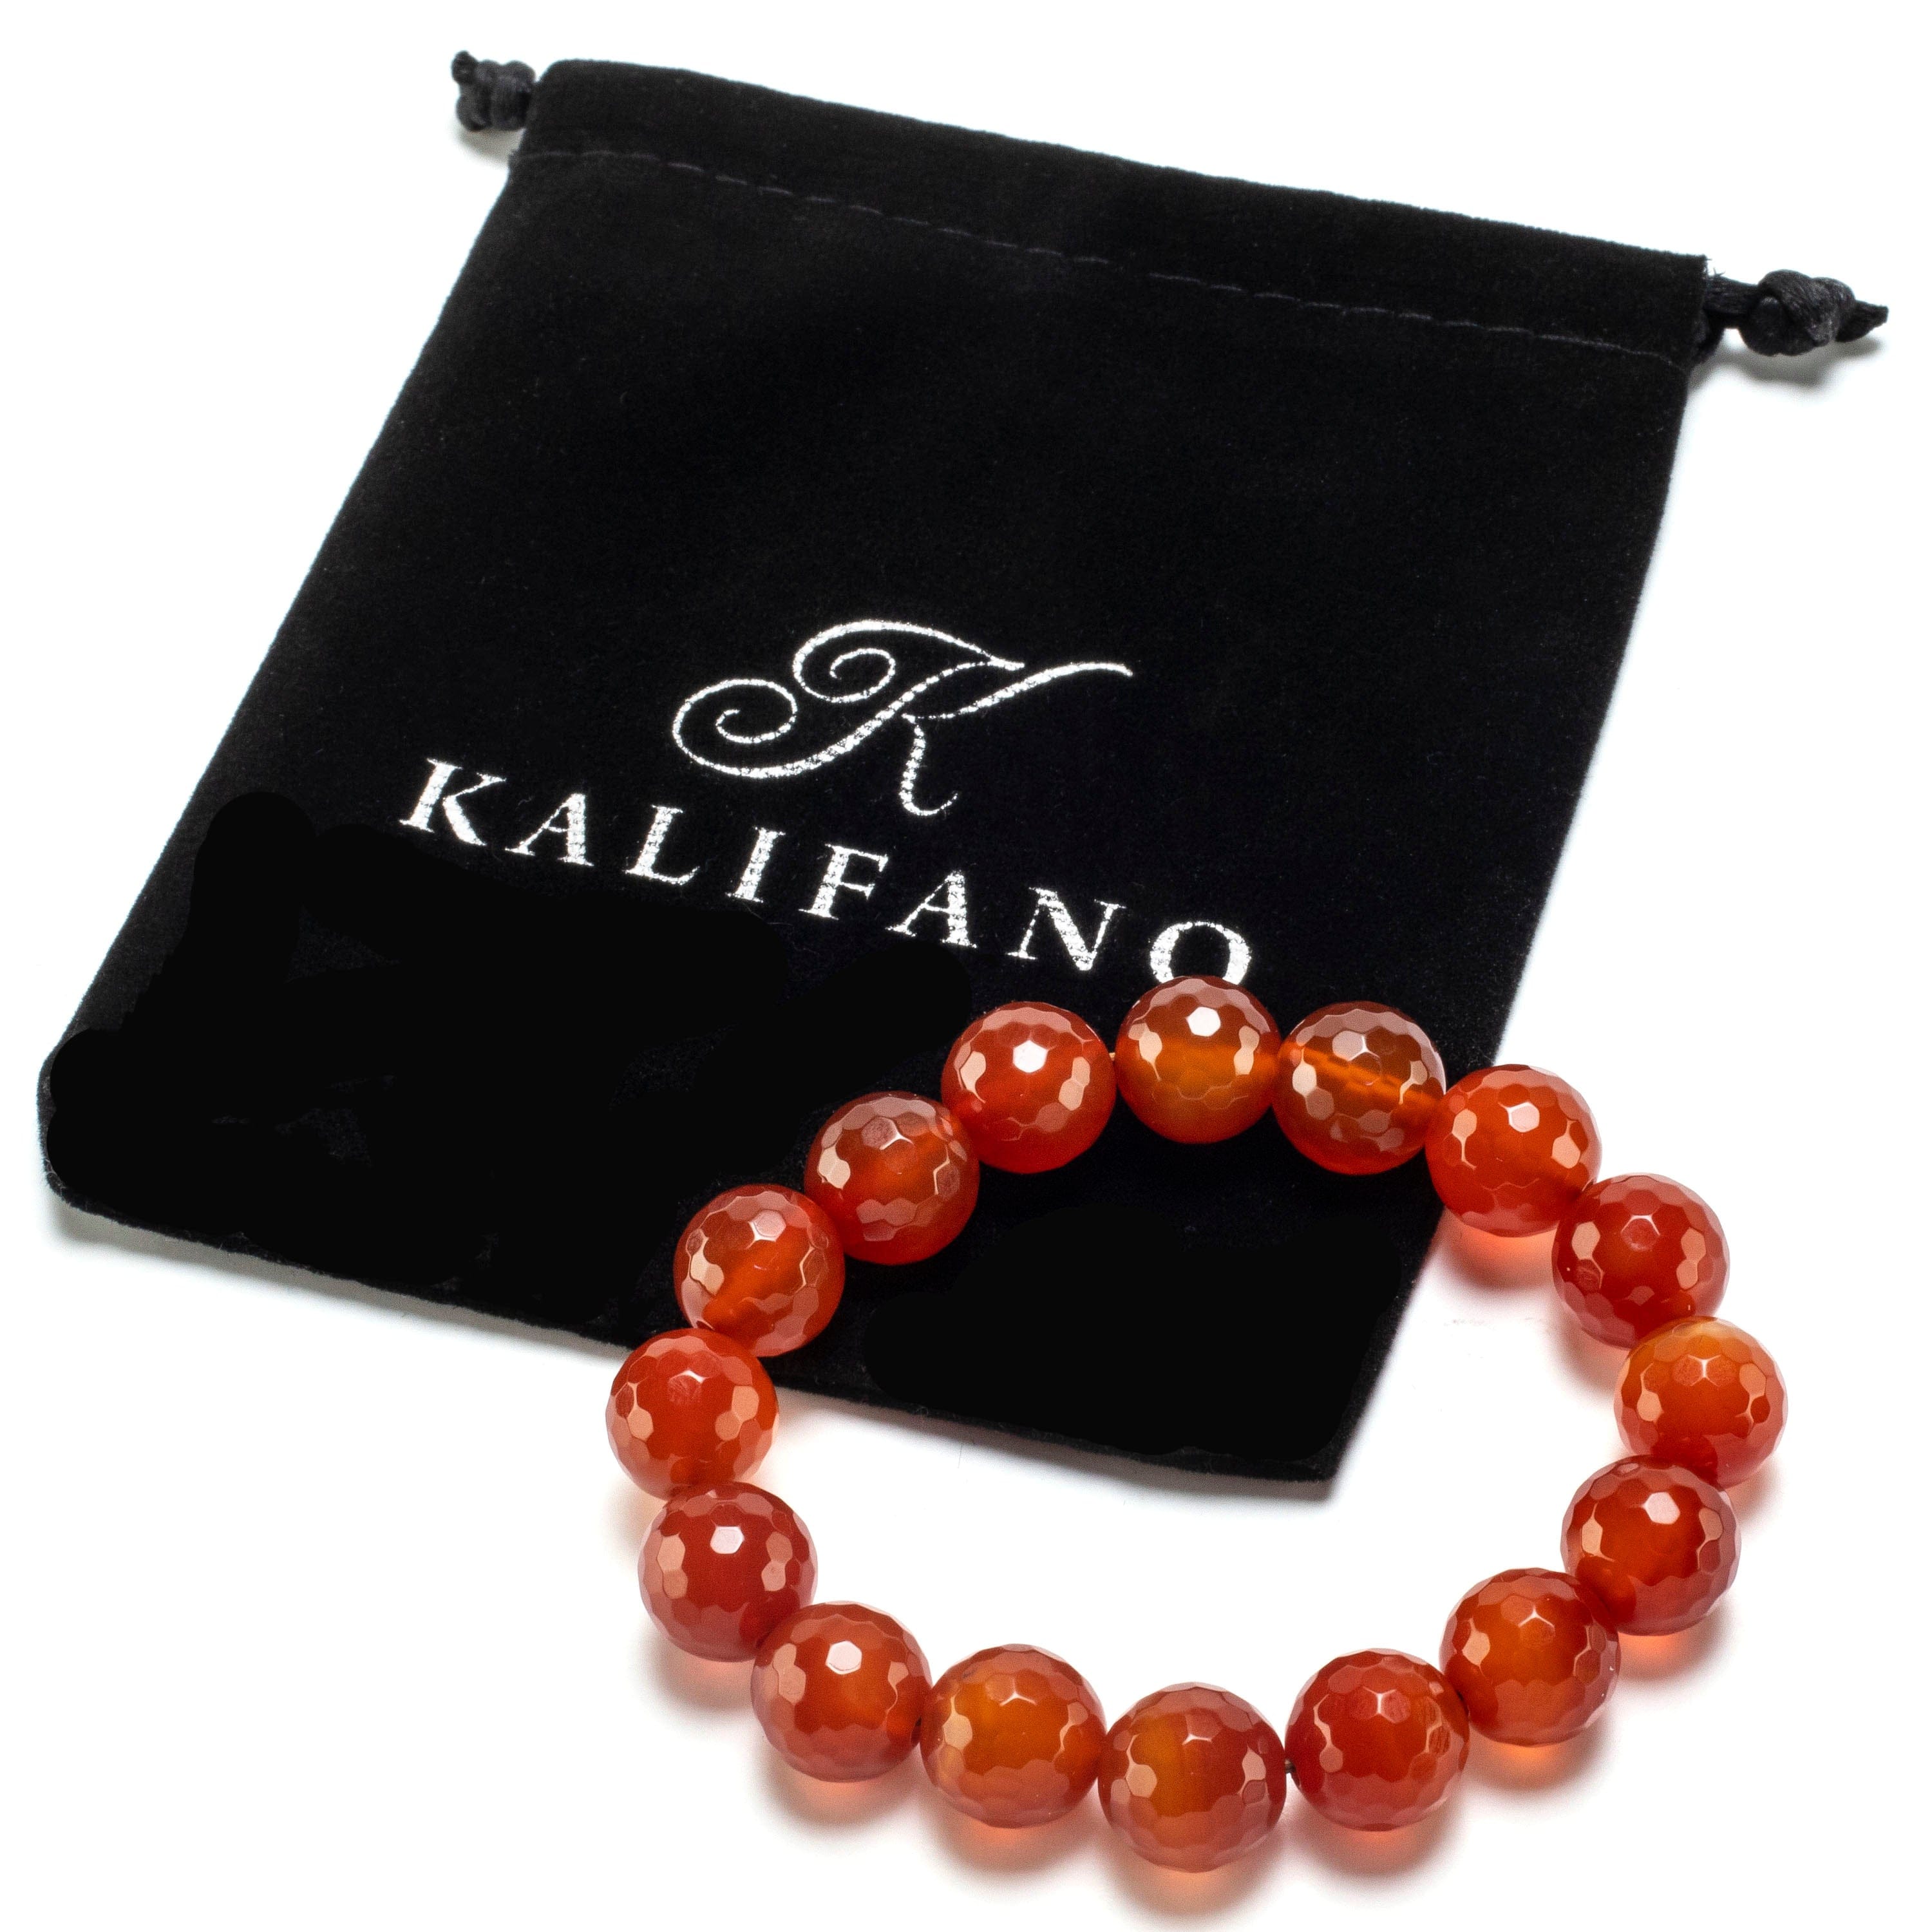 Kalifano Gemstone Bracelets Faceted Carnelian 7mm Round Beads Gemstone Elastic Bracelet BLUE-BGP-051